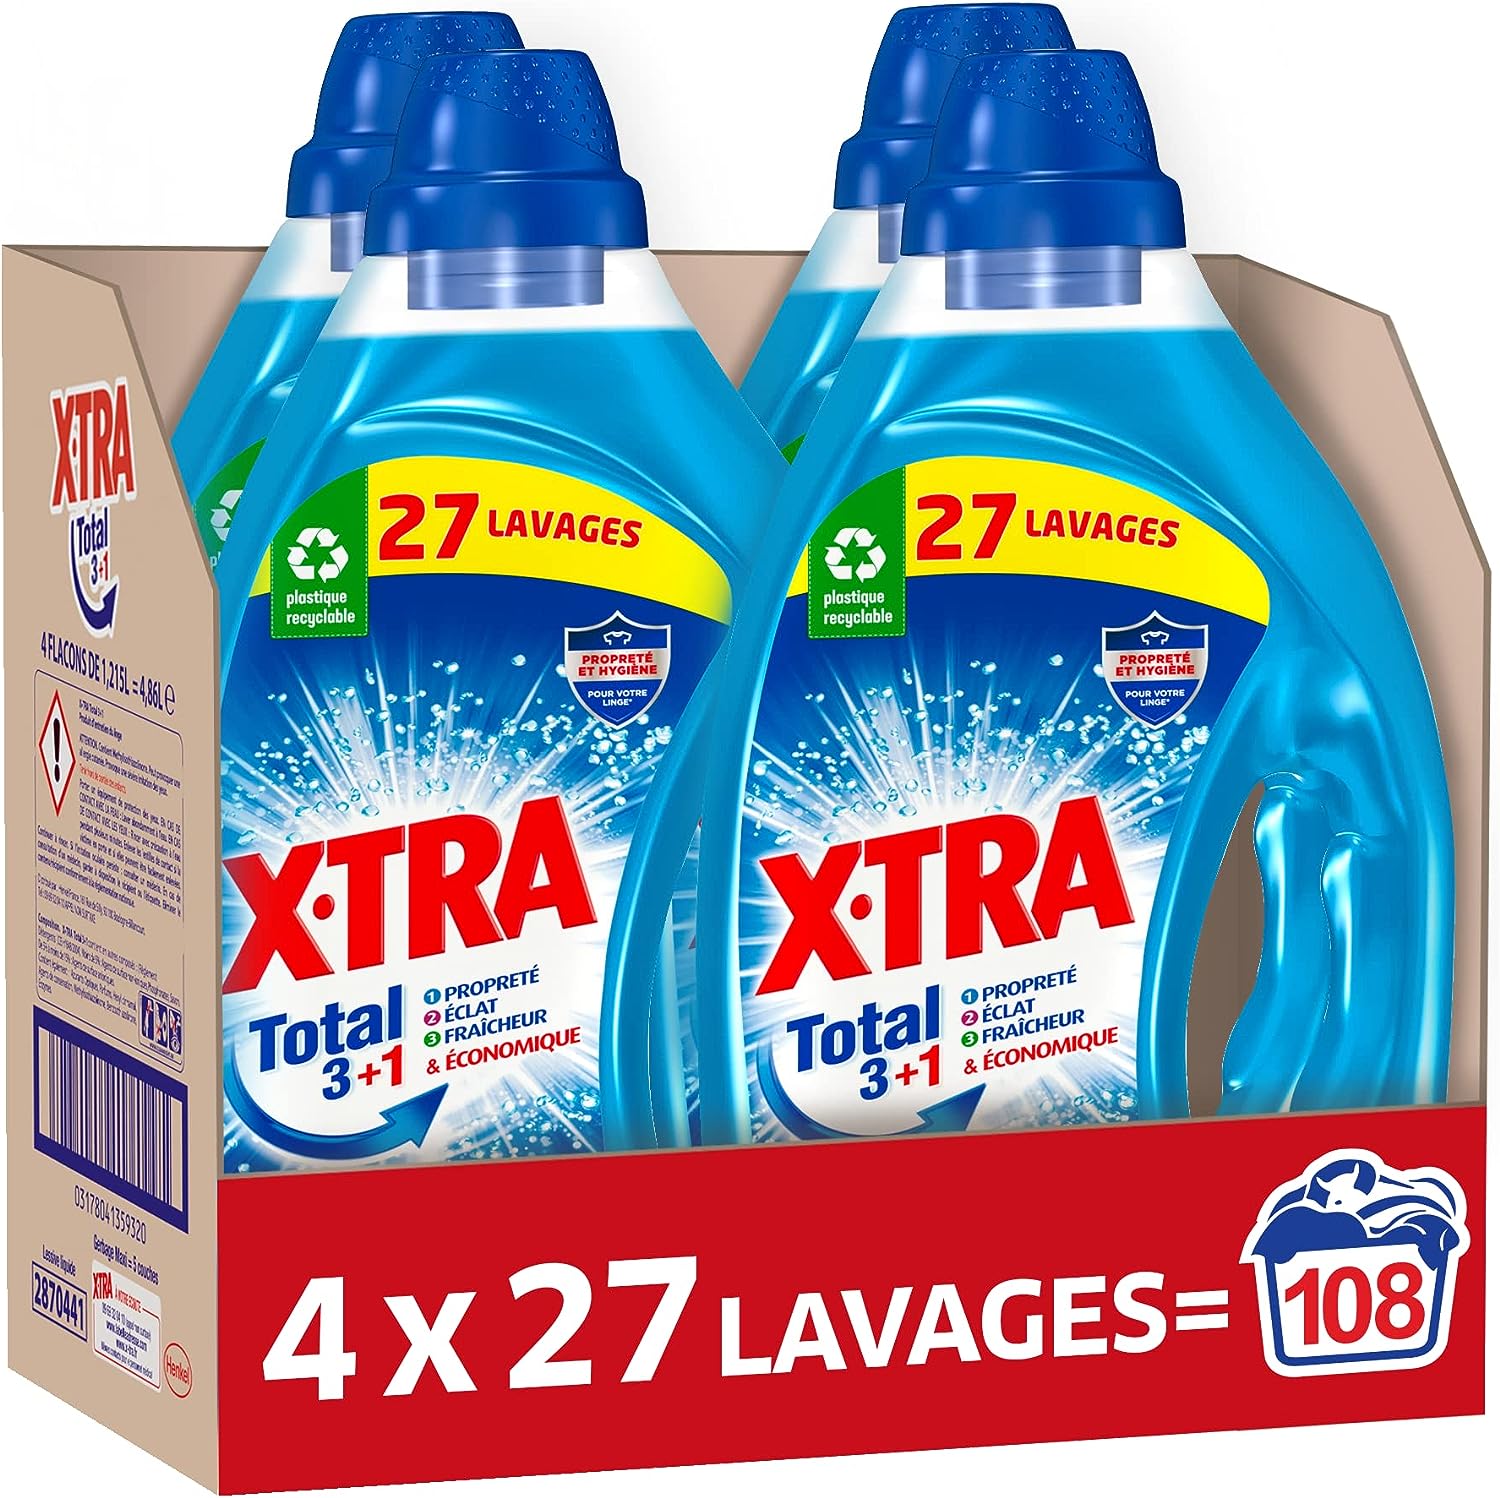 Lessive Liquide XTra Total,.jpg